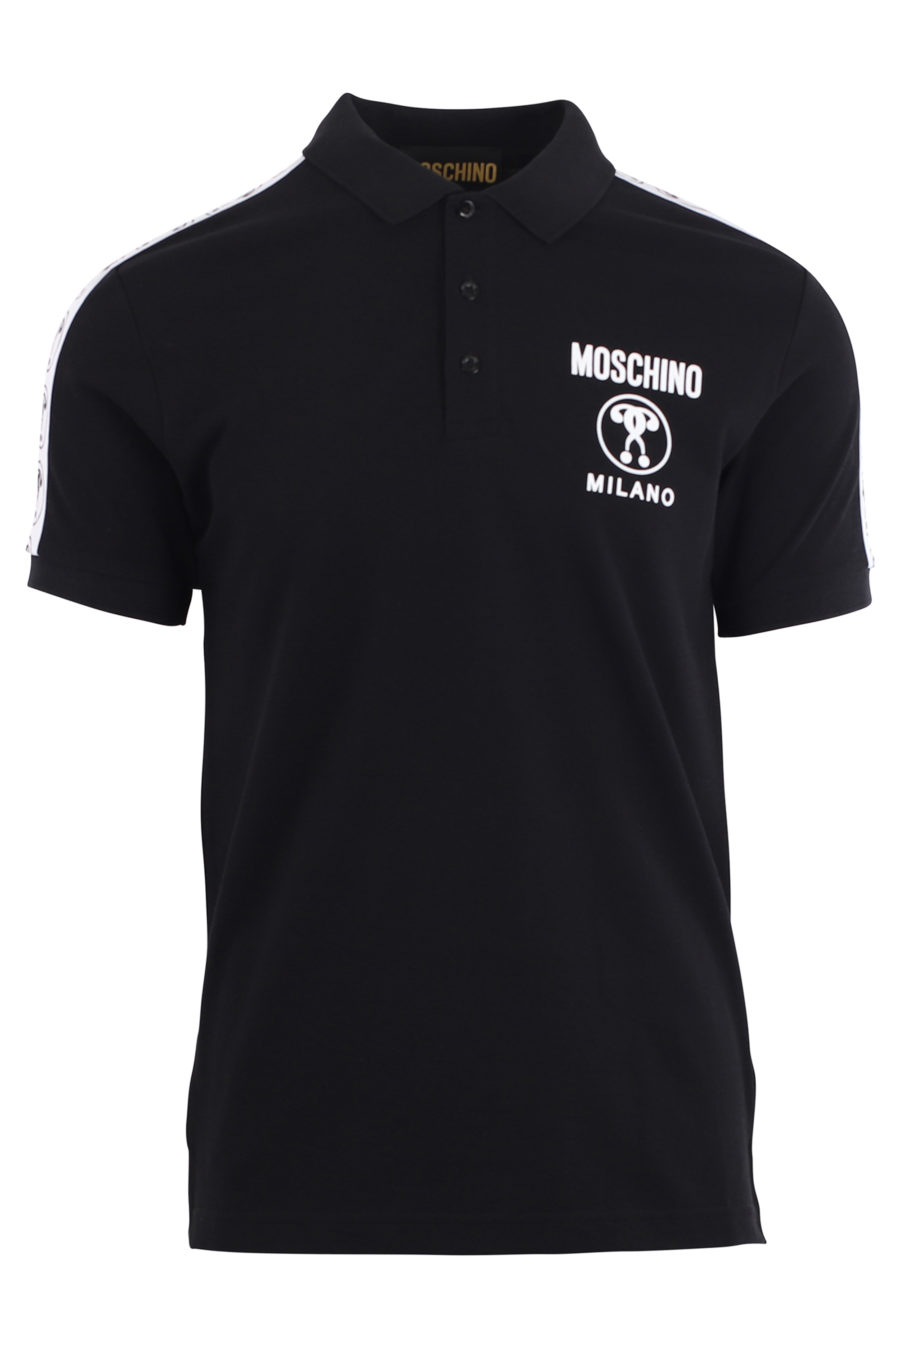 Schwarzes Poloshirt mit Doppelfrage-Logo und Ärmelband - IMG 9684